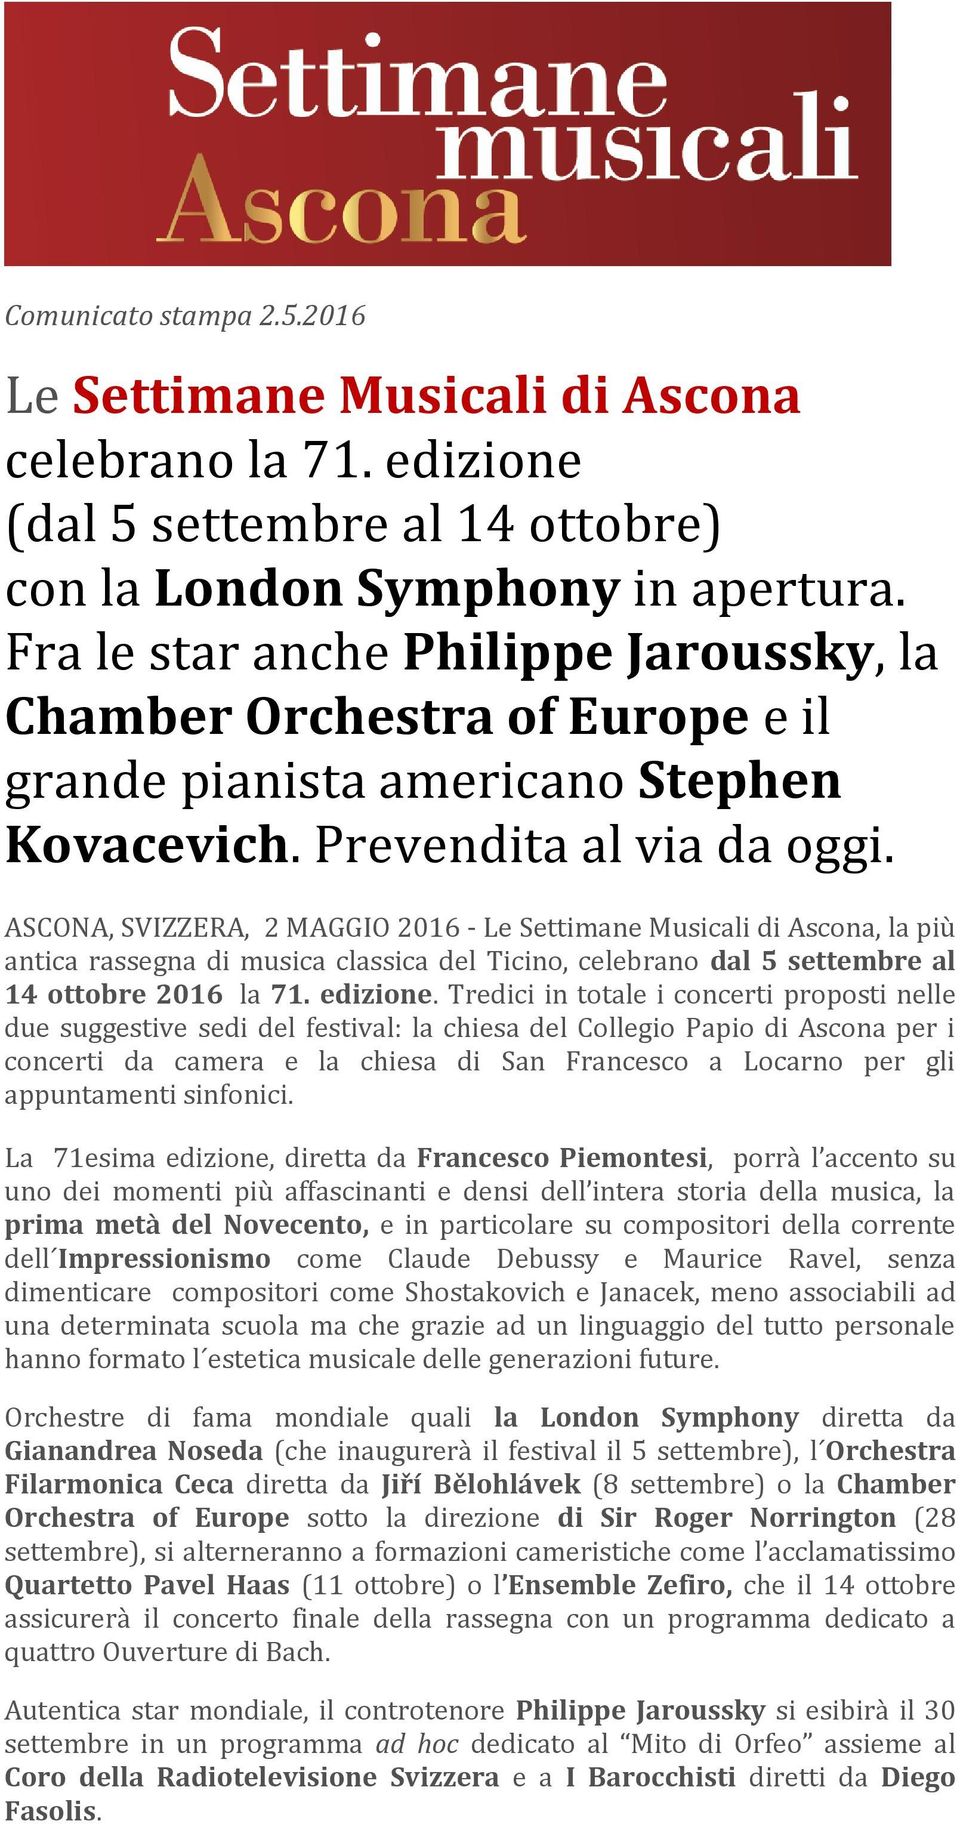 ASCONA, SVIZZERA, 2 MAGGIO 2016 - Le Settimane Musicali di Ascona, la più antica rassegna di musica classica del Ticino, celebrano dal 5 settembre al 14 ottobre 2016 la 71. edizione.